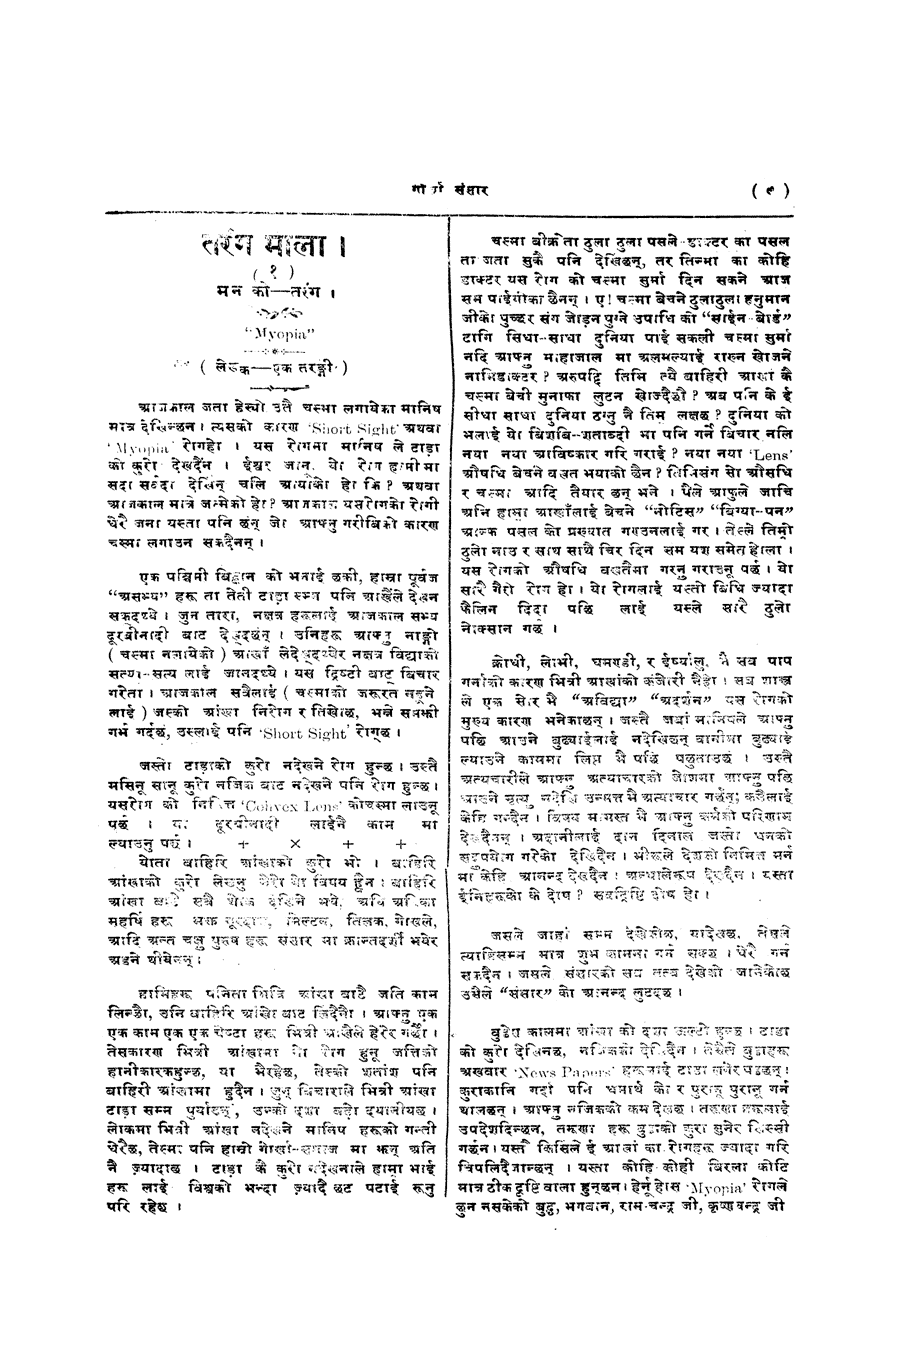 Gorkha Sansar, 29 Nov 1927, page 11